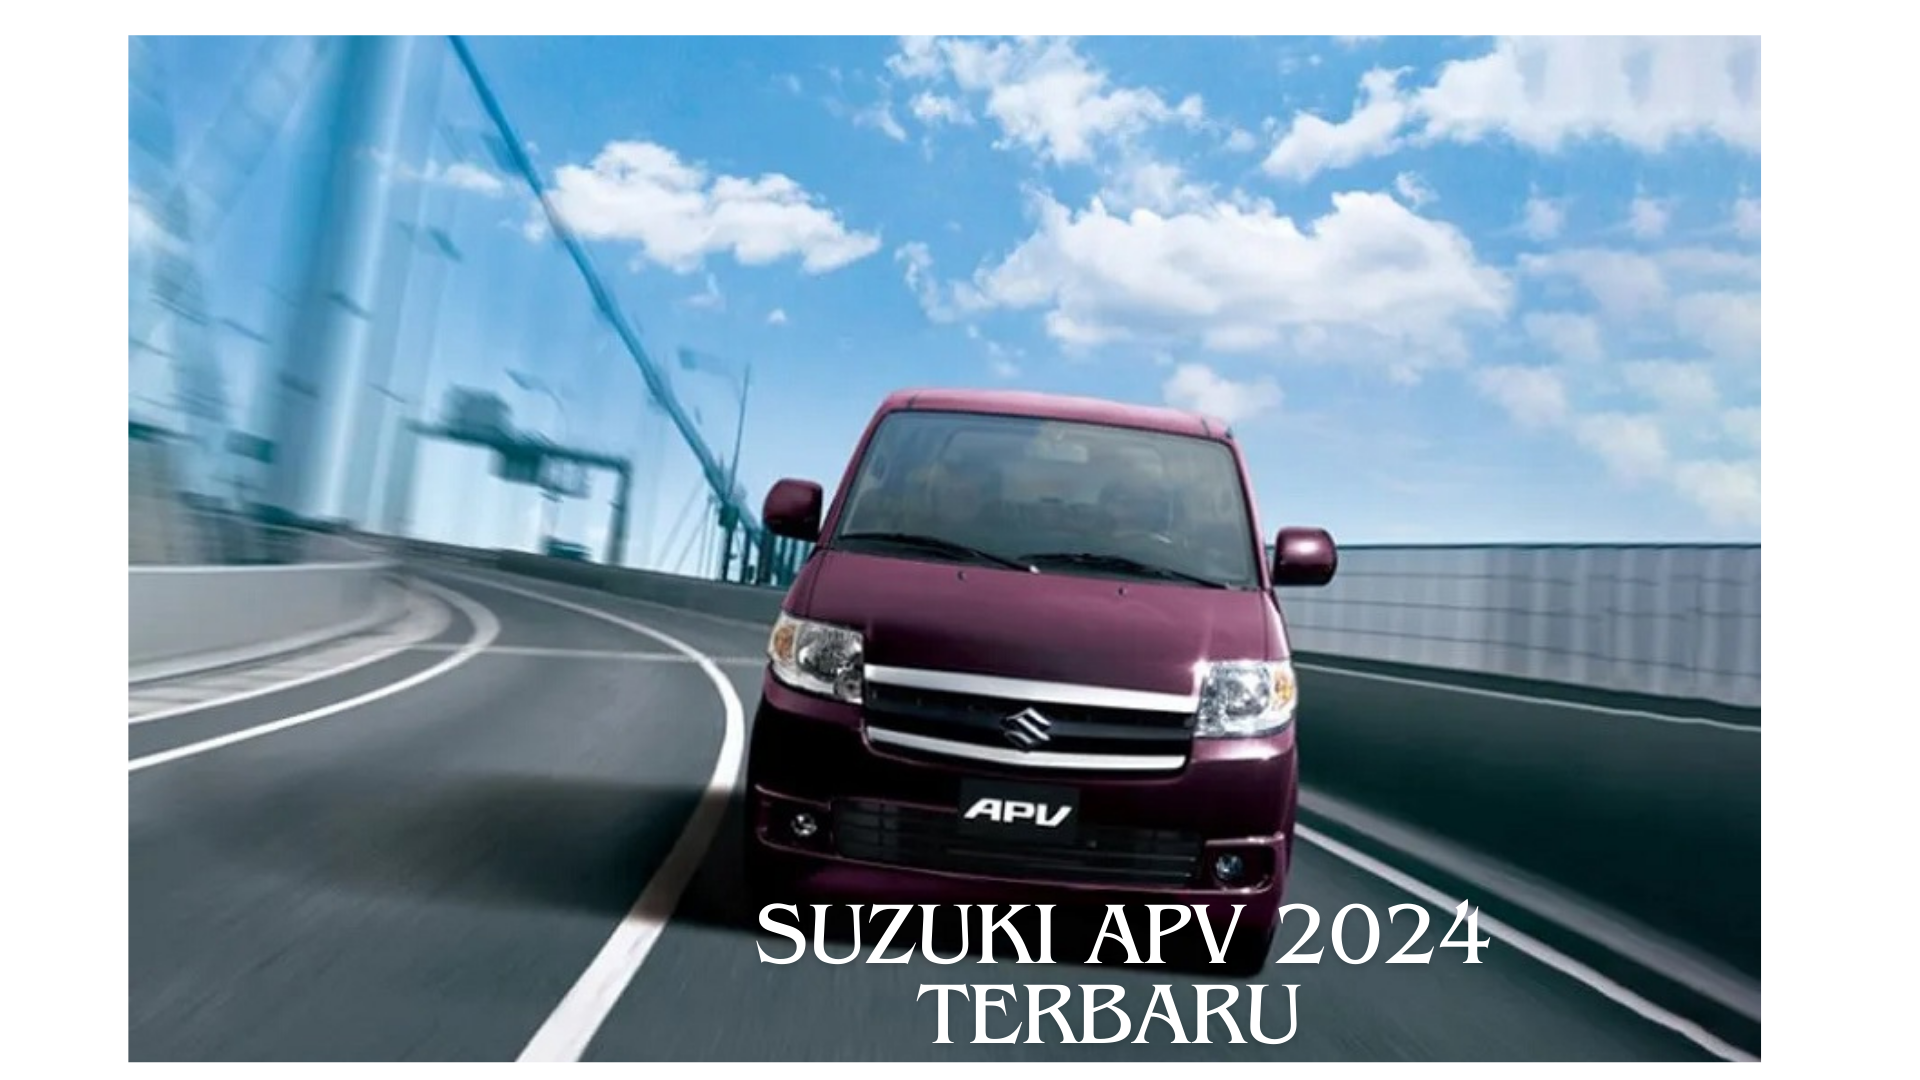 Spesifiksi Suzuki APV 2024 Terbaru yang Keren Lengkap dengan Harganya